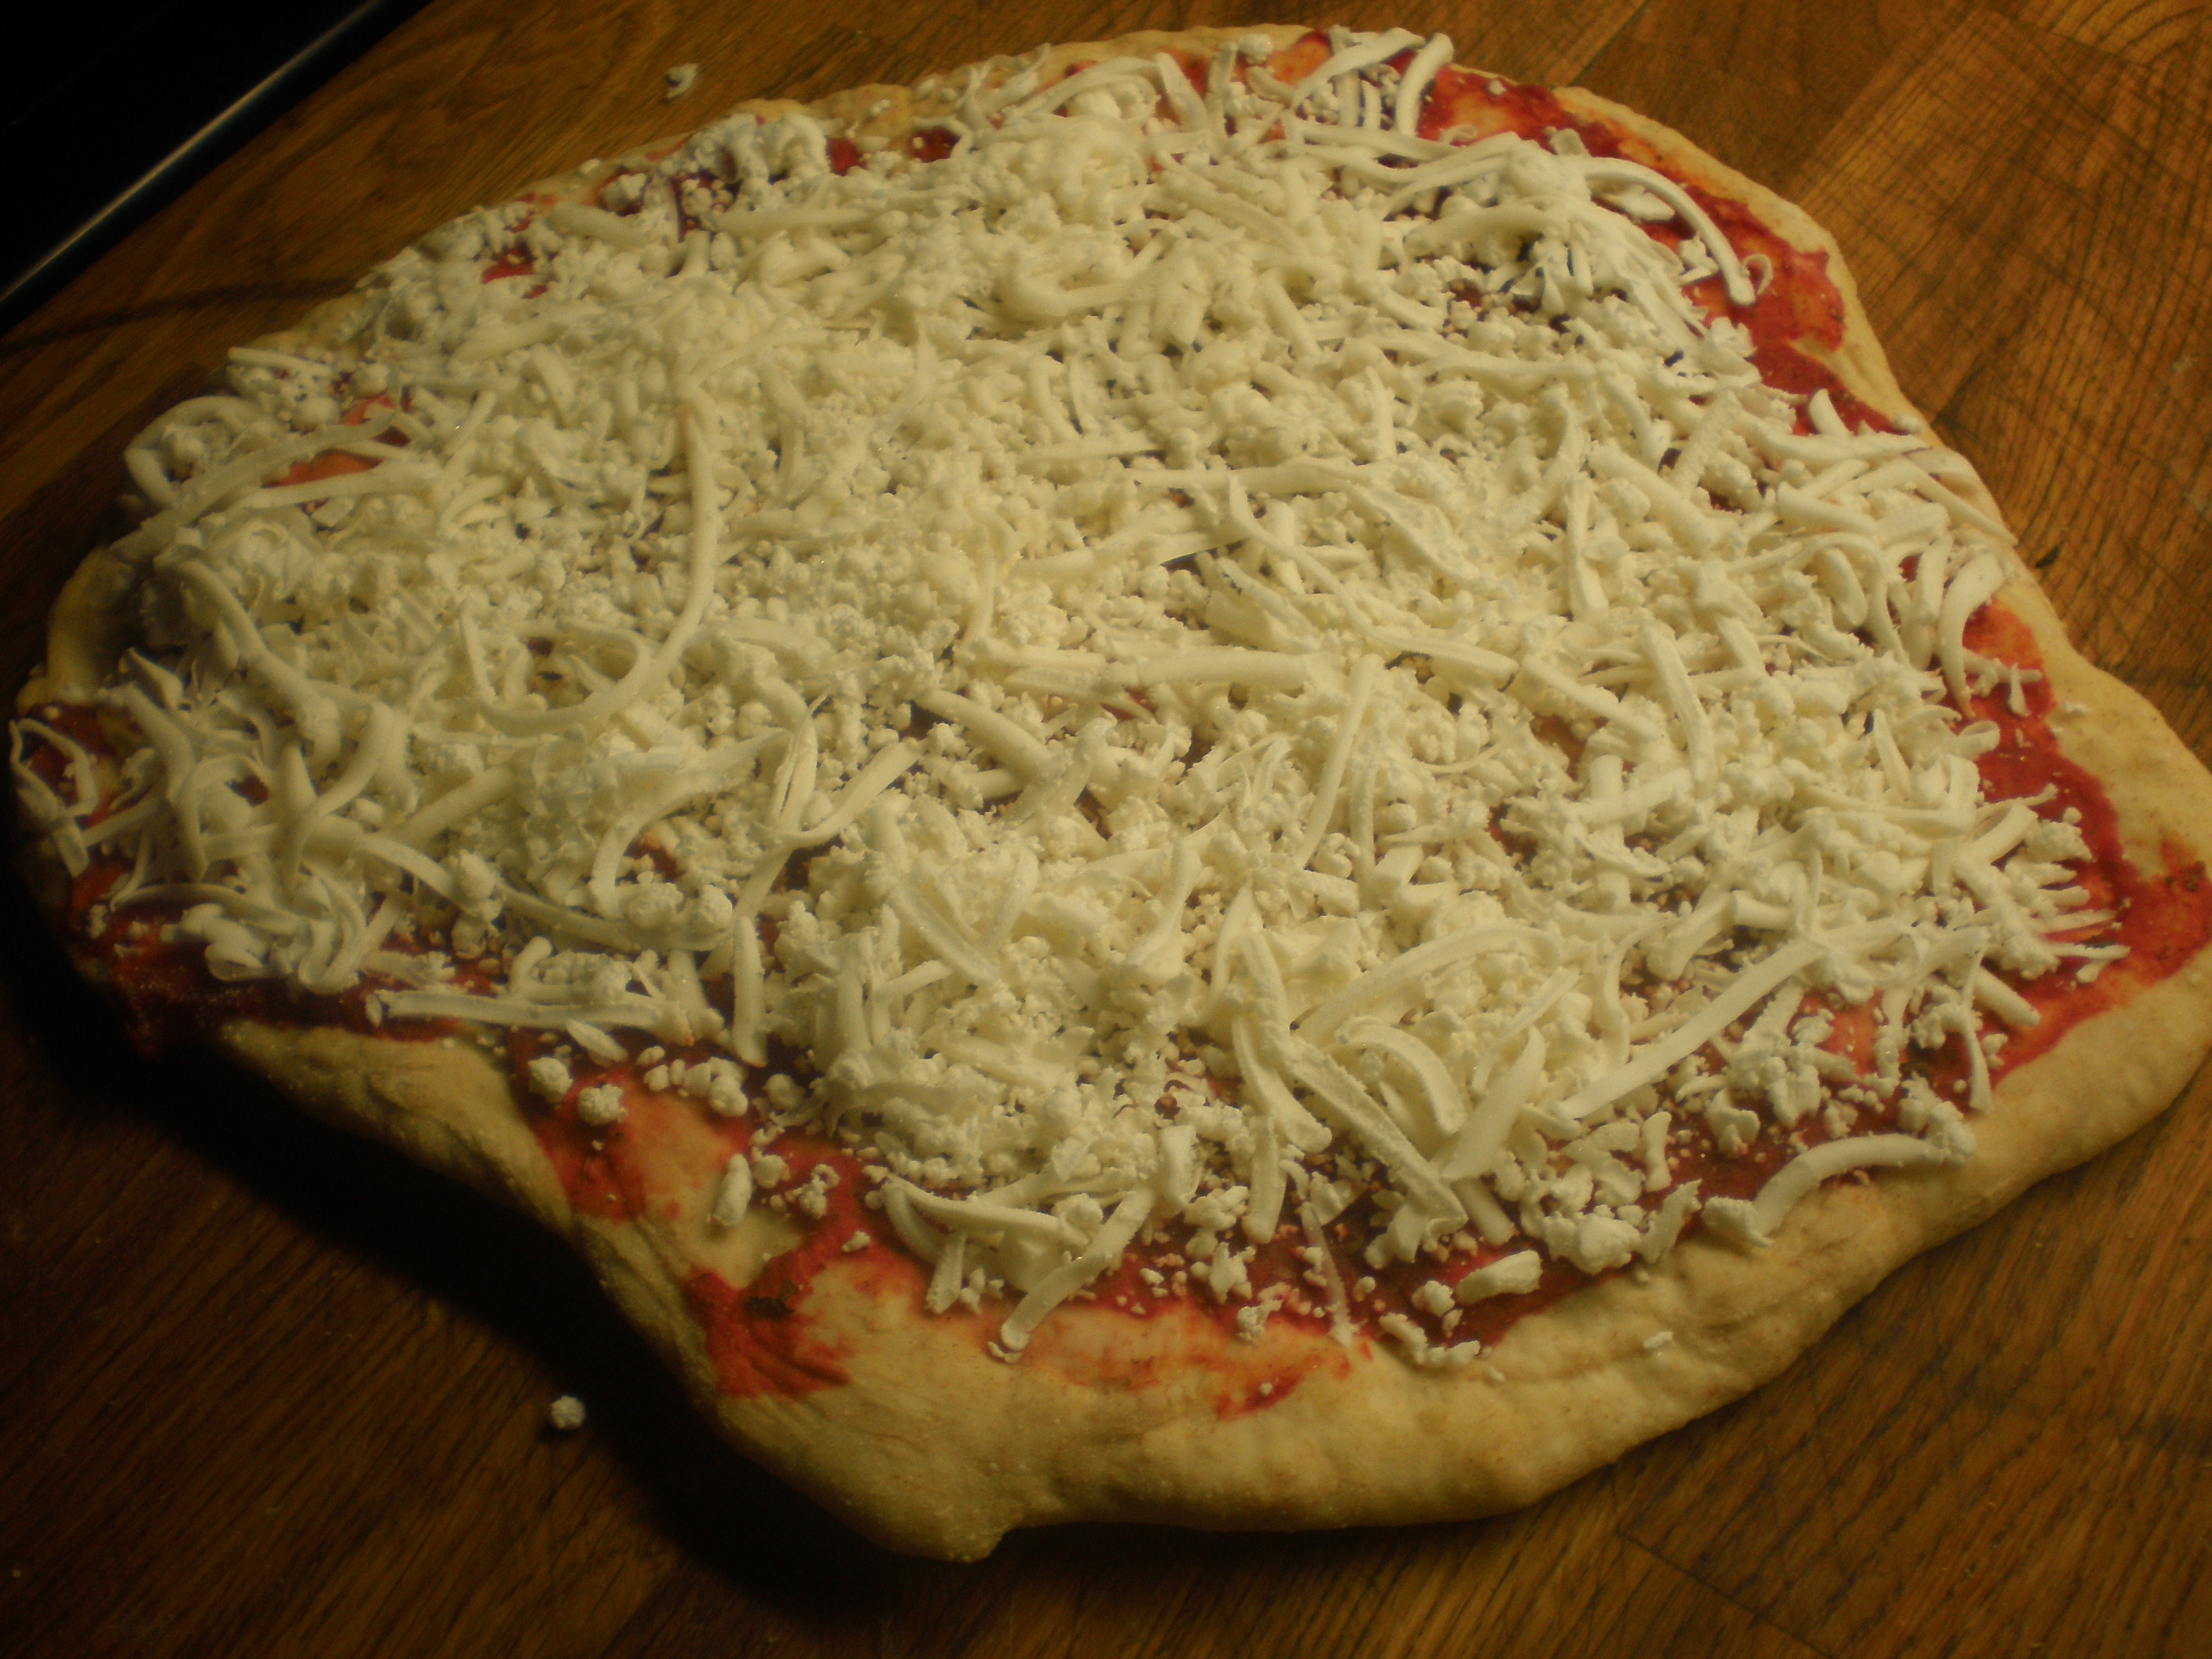 Homemade Frozen Pizza